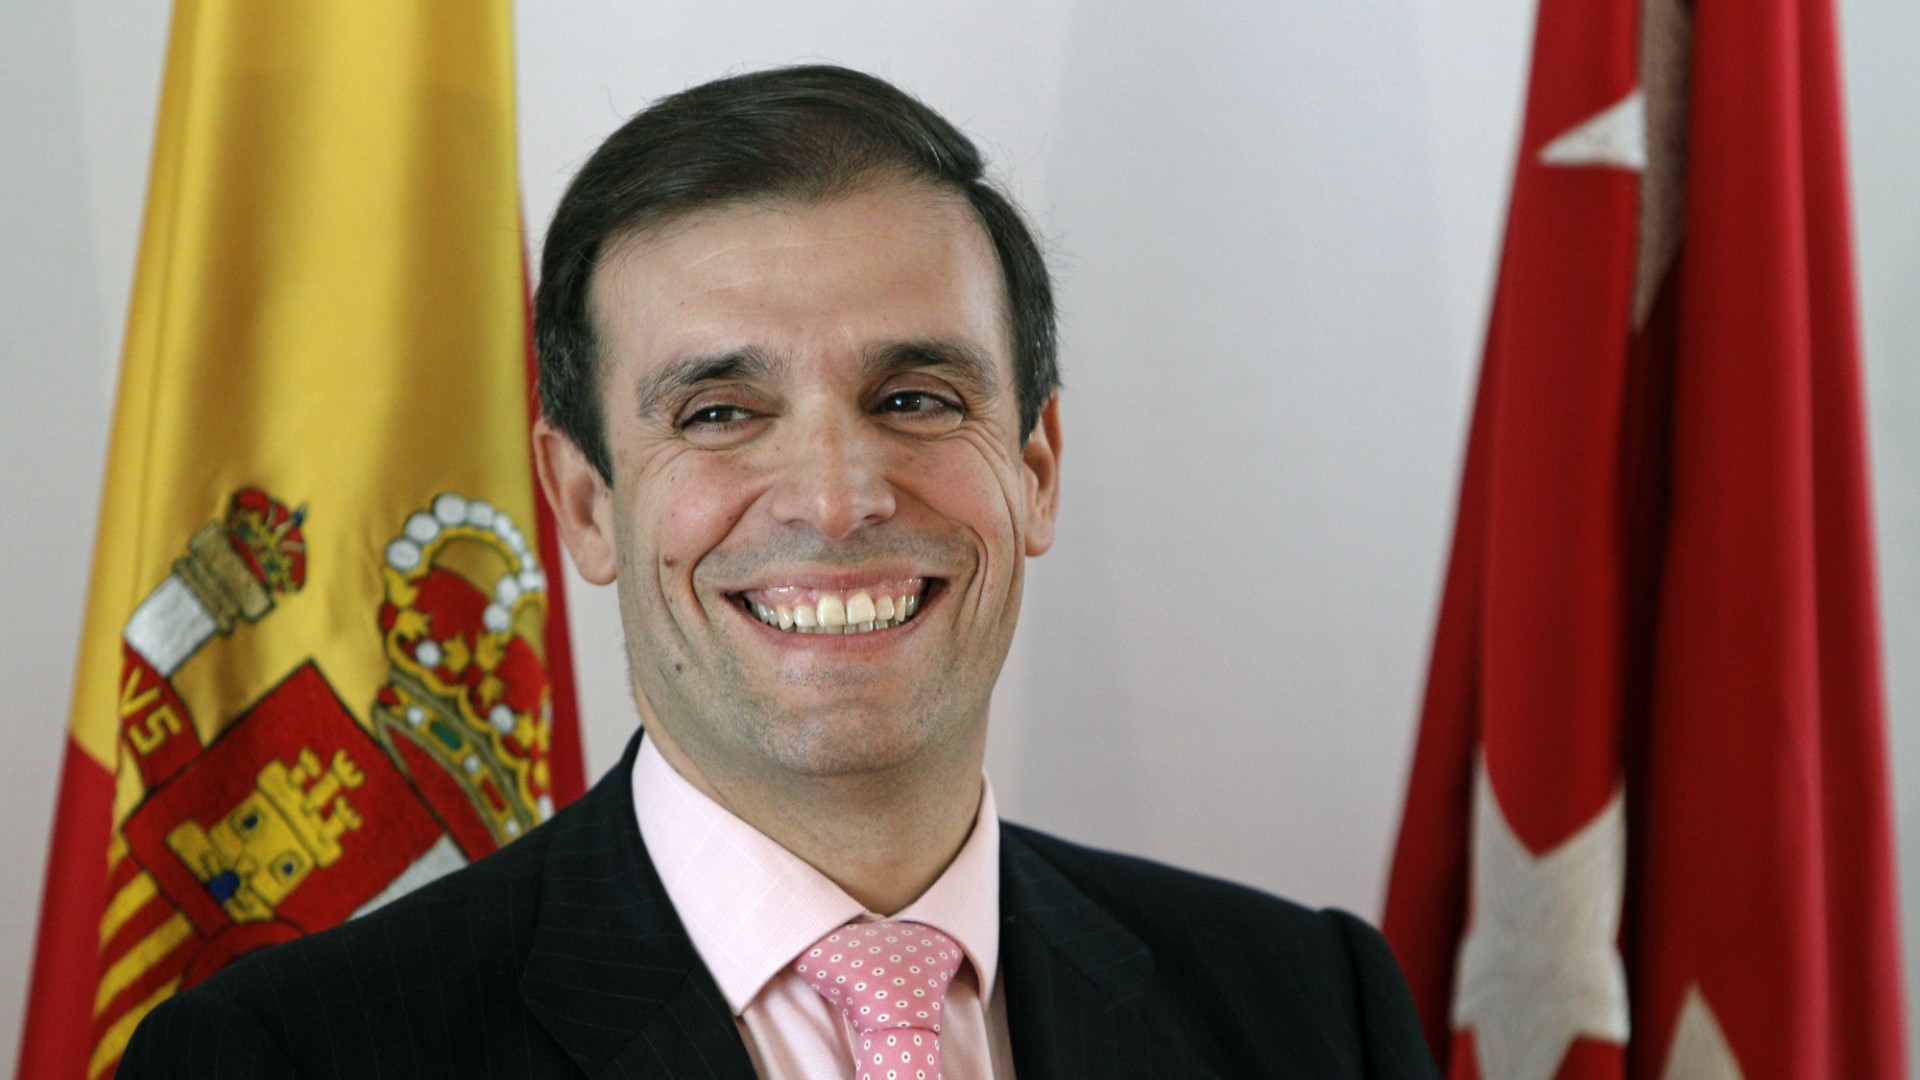 Dimite el presidente de la Cámara de Cuentas de Madrid por su imputación en el caso Lezo